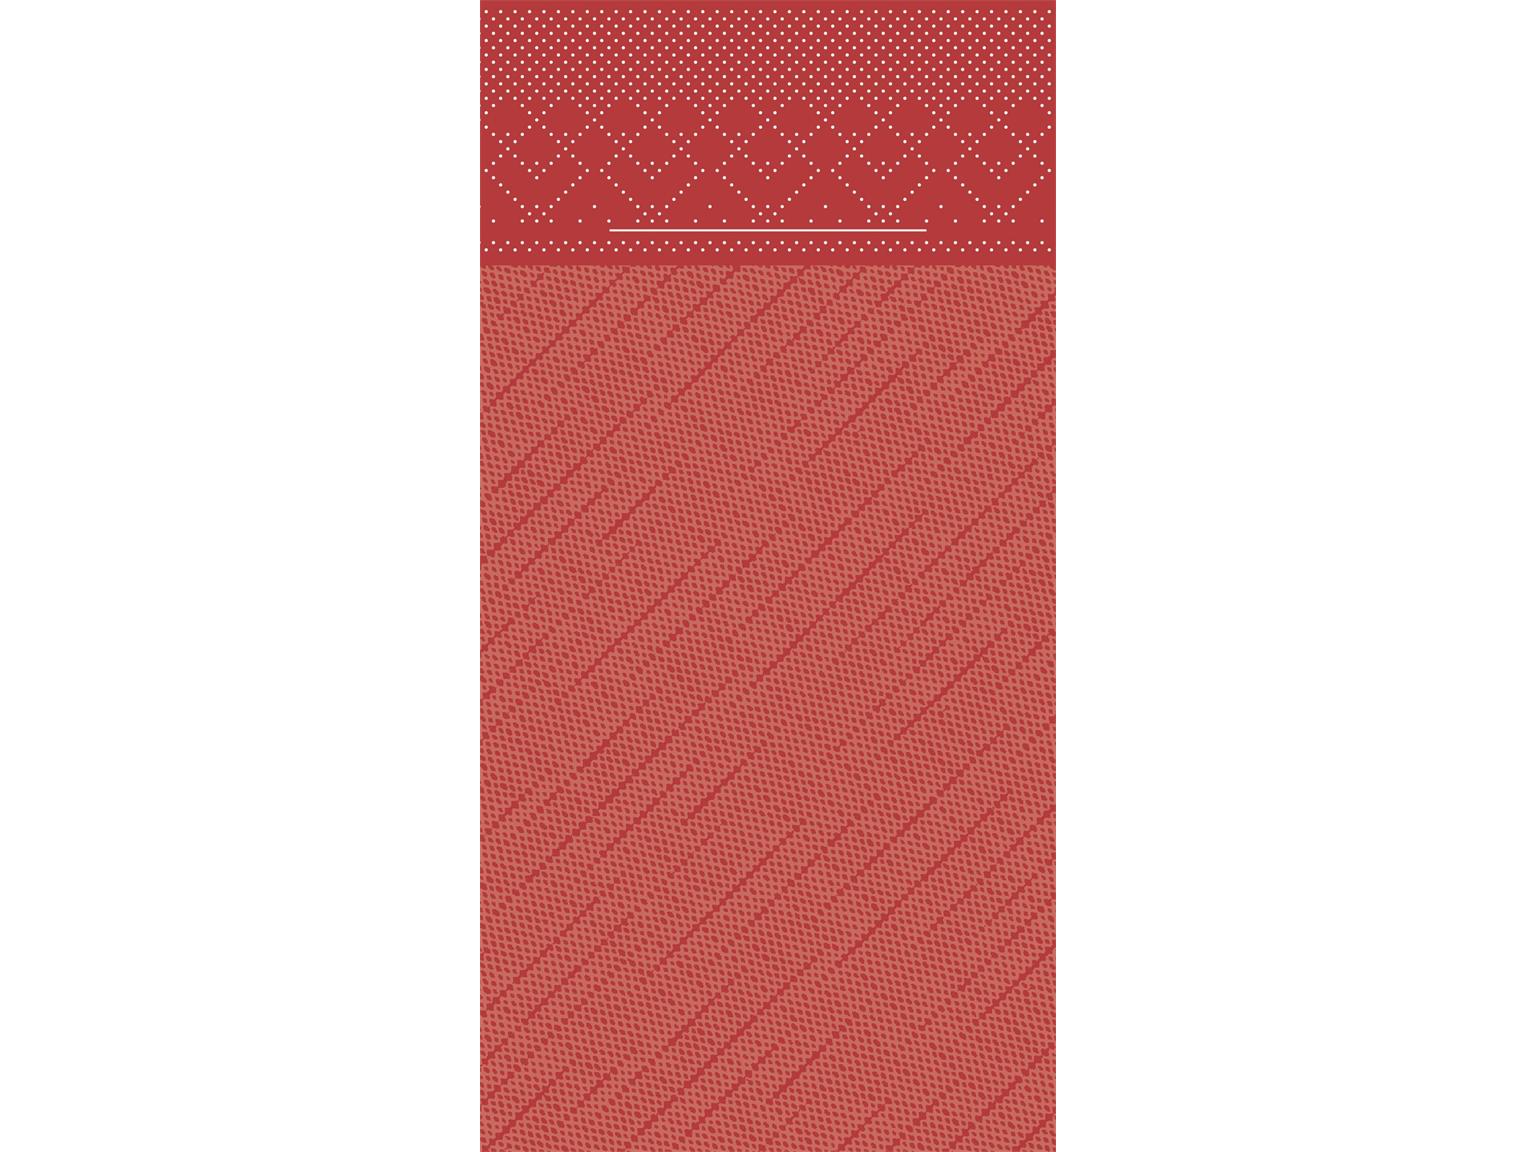 BESTECKTASCHEN TISSUE-DELUXE  40 x 40 cm, 1/8 Falz, Tissue-Deluxe